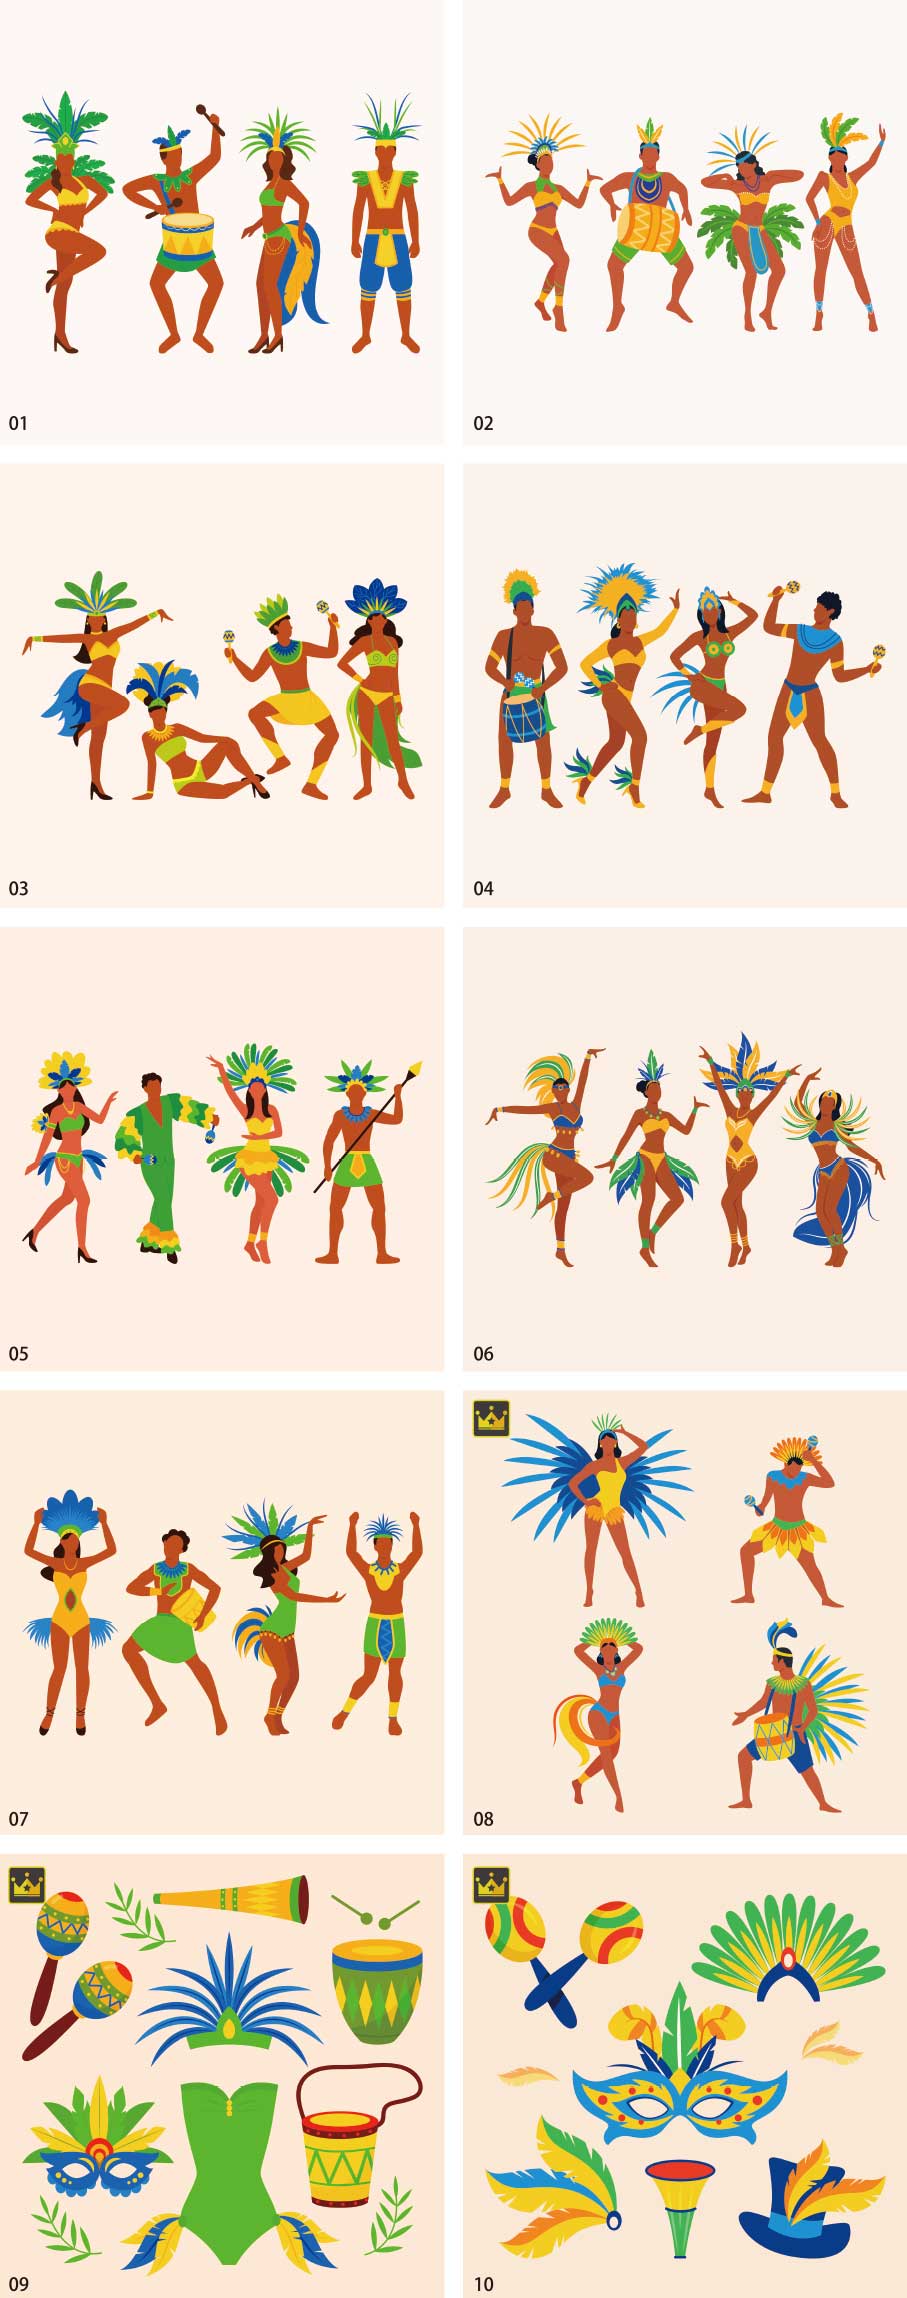 브라질 카니발 댄서의 일러스트 컬렉션